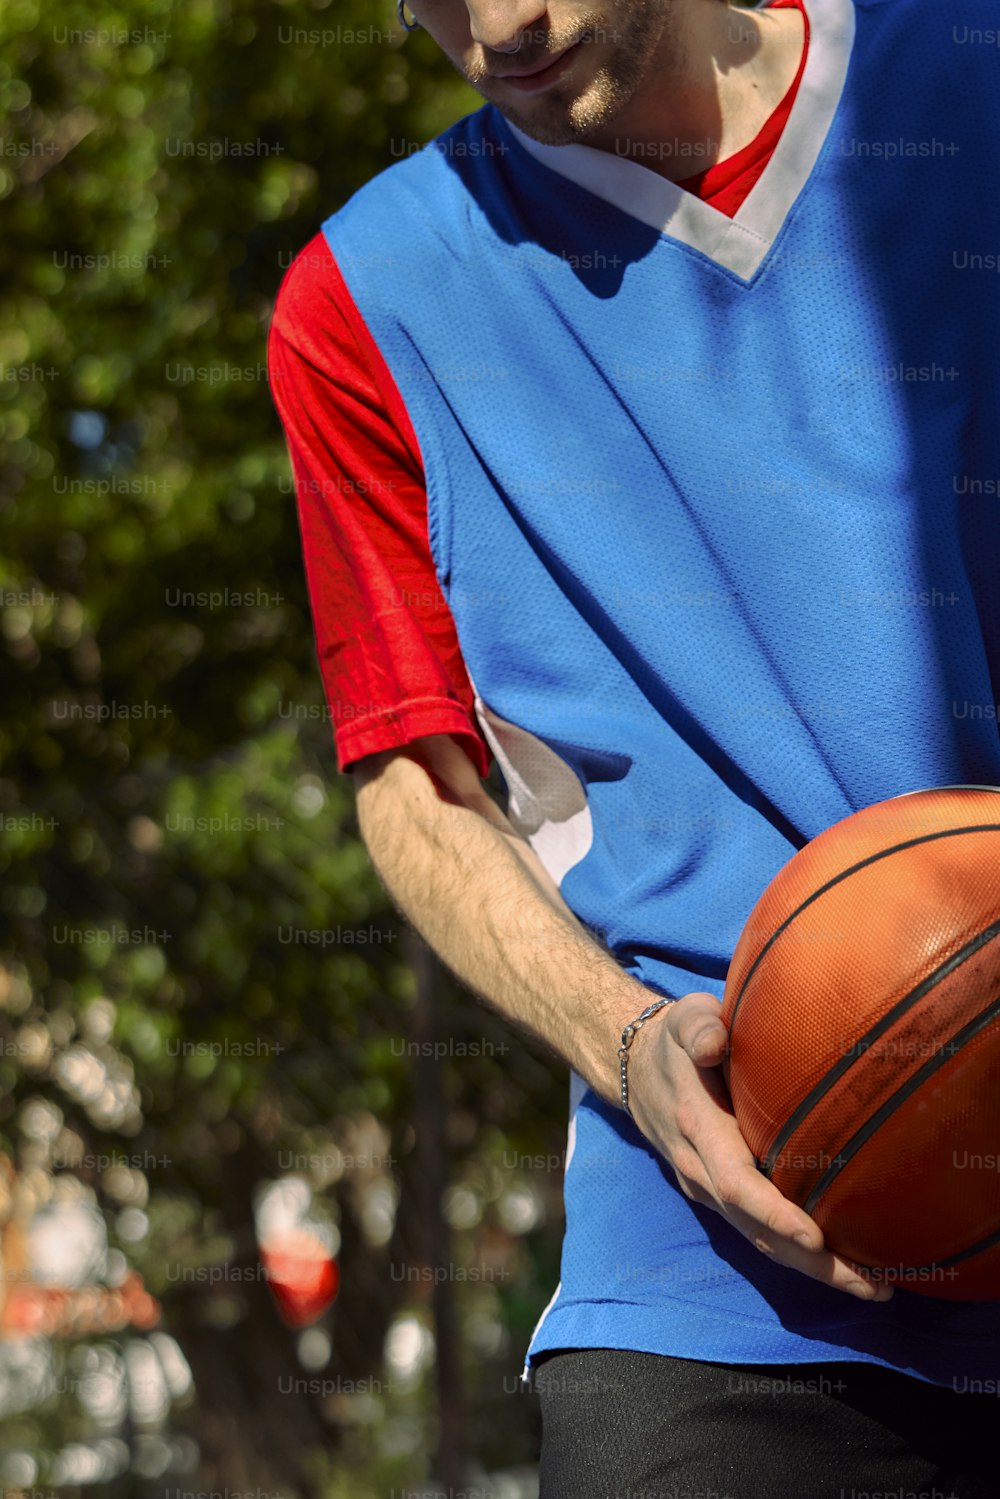 Un hombre sosteniendo una pelota de baloncesto en su mano derecha